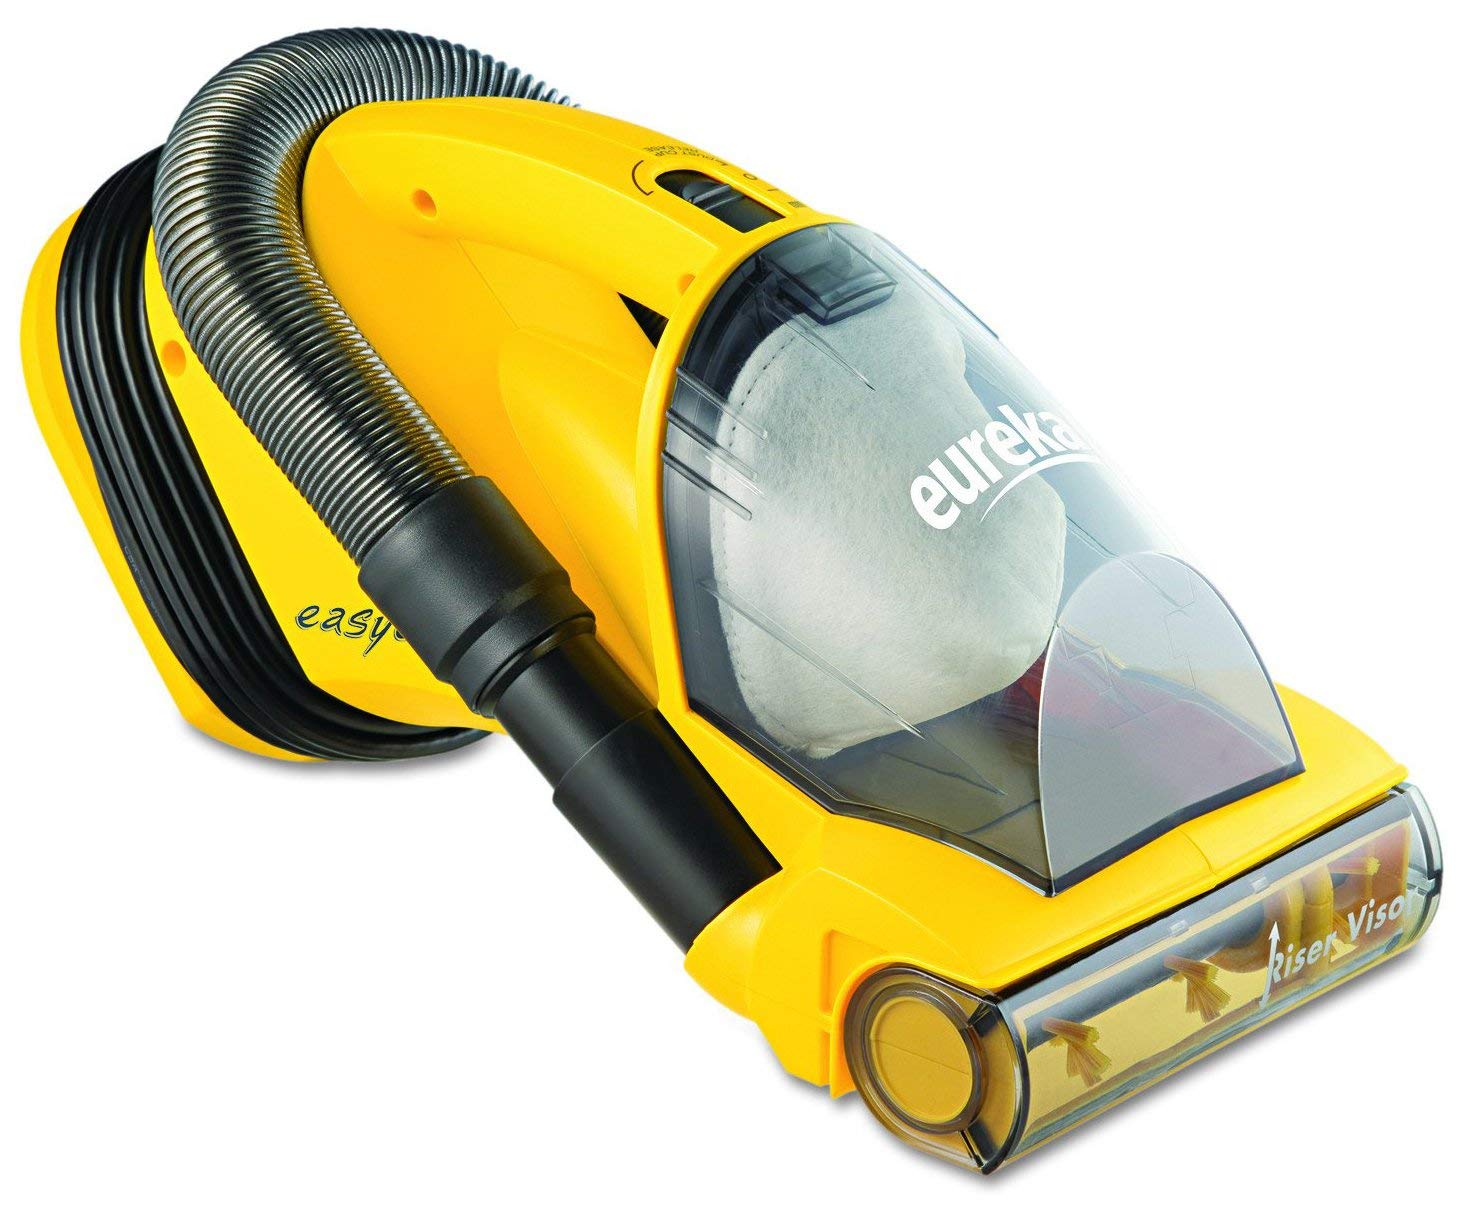  Eureka Easy Clean Corded Handheld vacuum